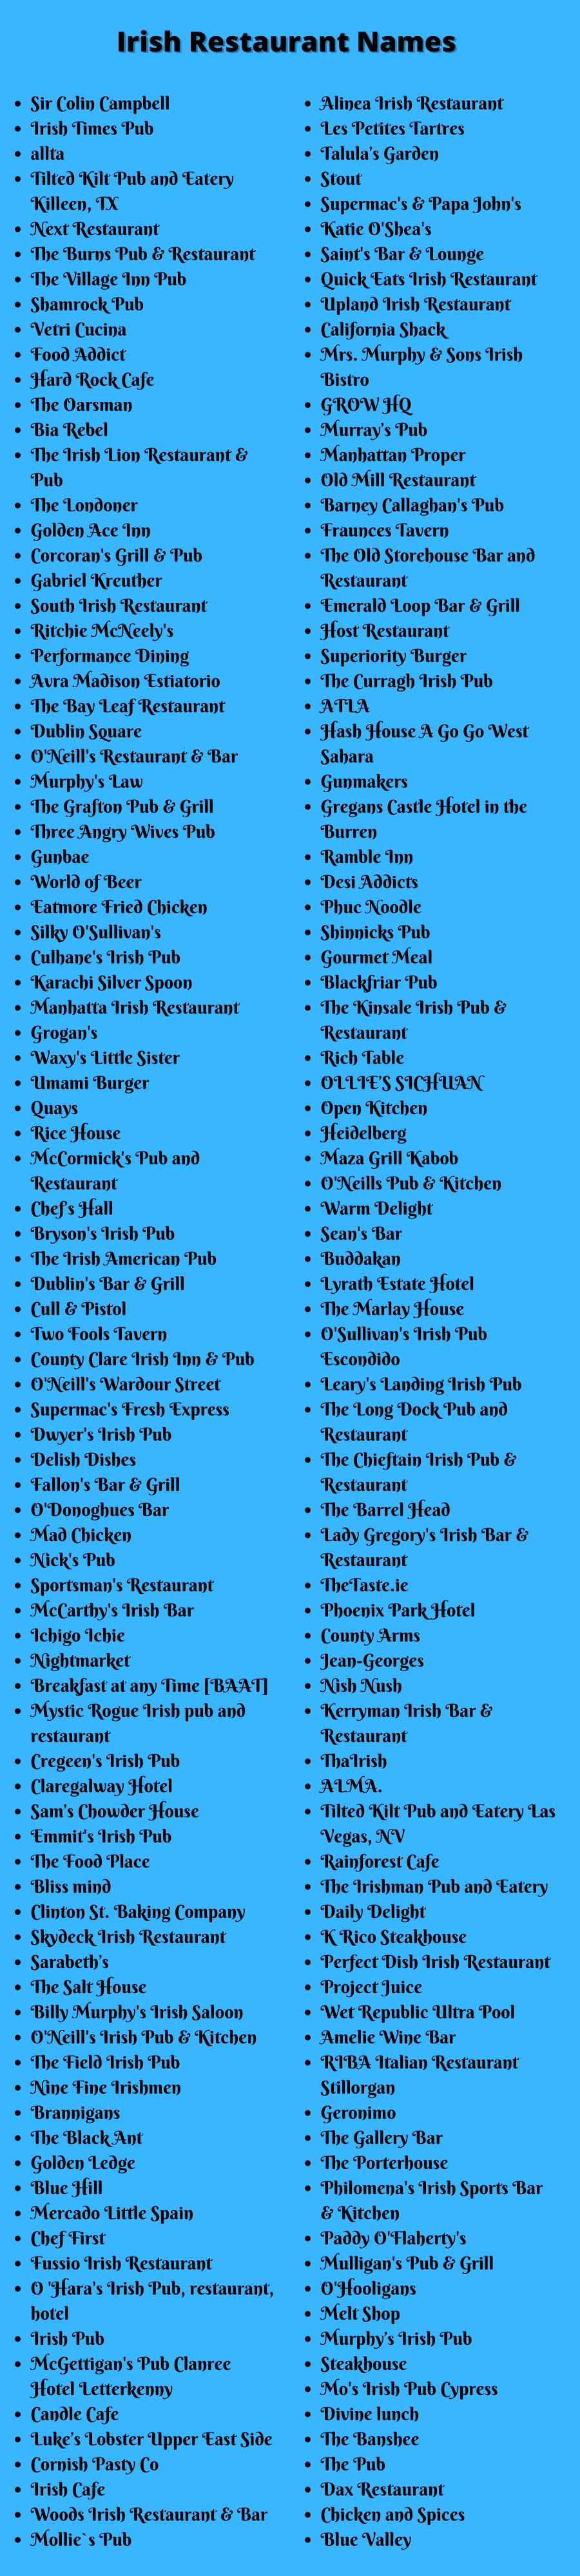 Irish Restaurant Names